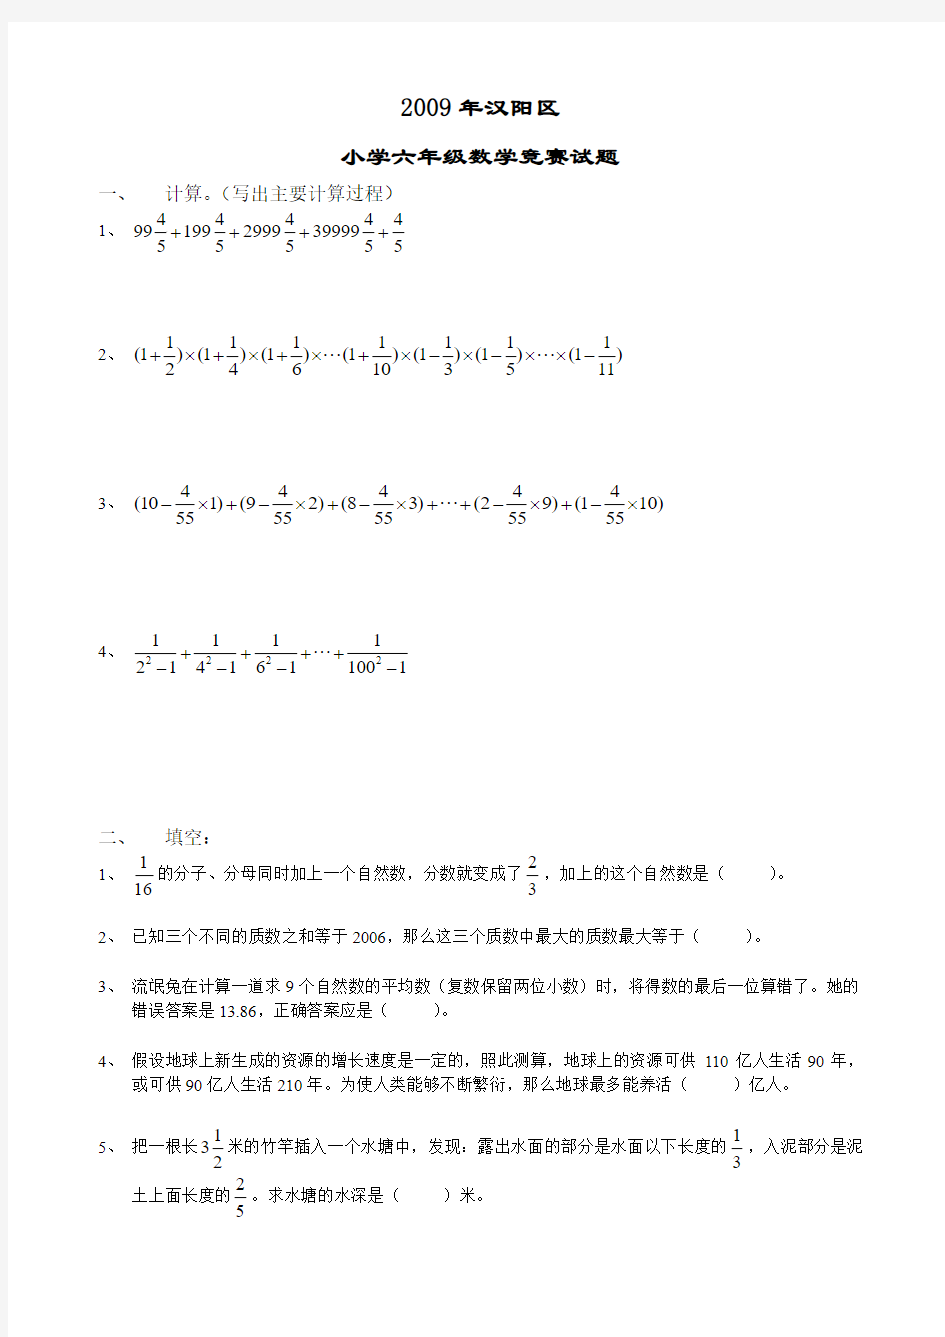 《武汉市小升初招生考试真题》2009年汉阳区小学六年级数学竞赛试题